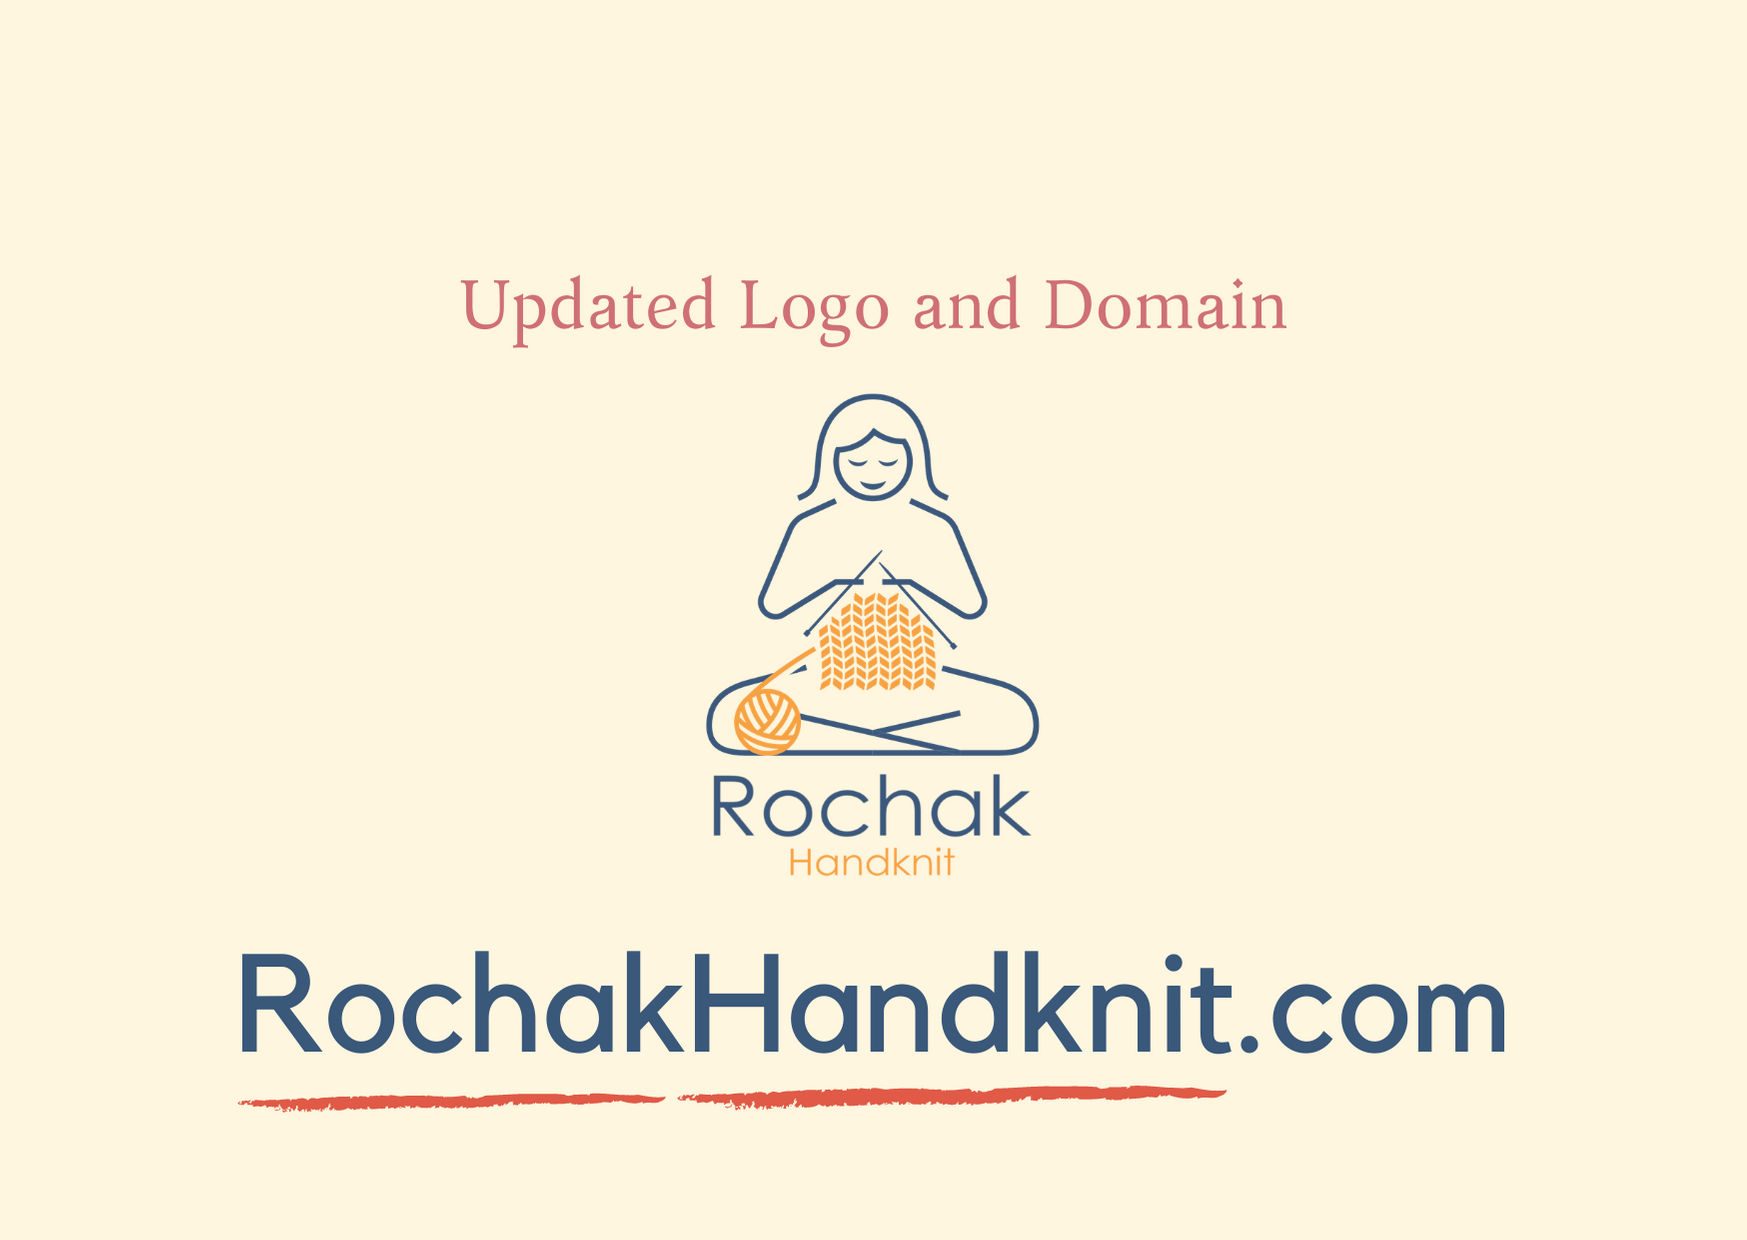 Rochak handknit のロゴとドメインを更新しました